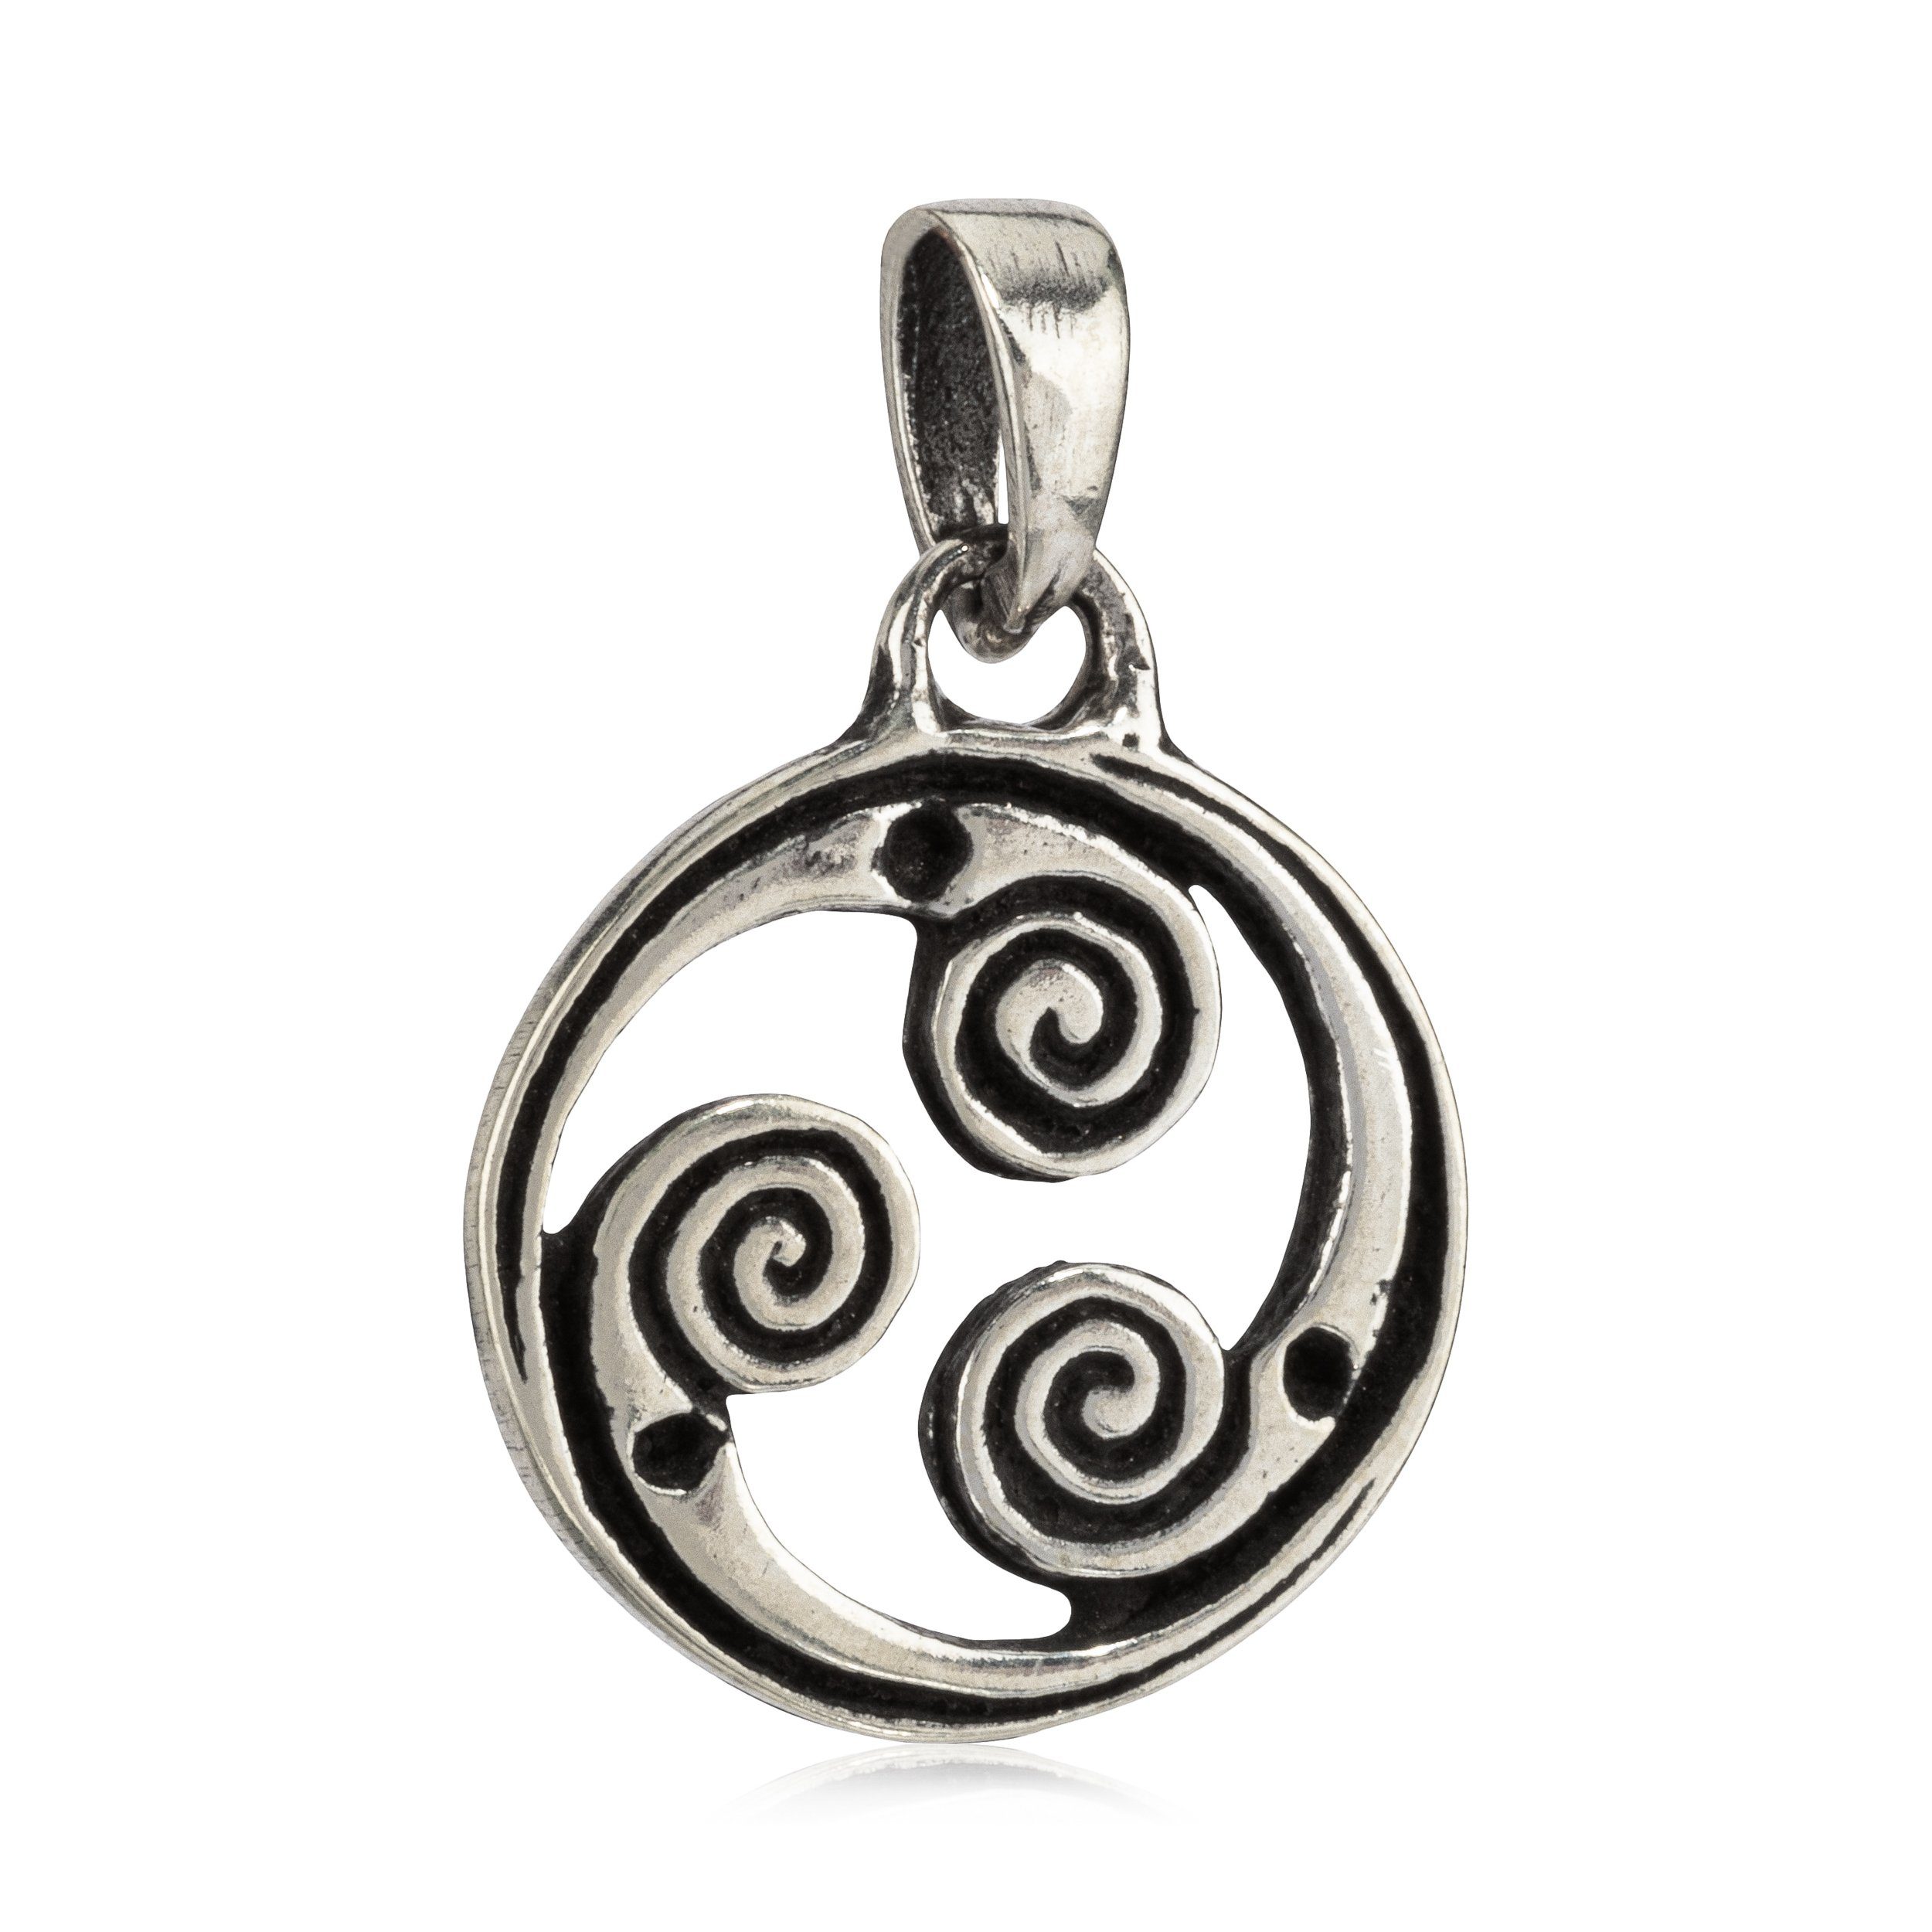 NKlaus Kettenanhänger Keltisches Spiralrad Amulett 1,5cm Silber 925 Ket, 925 Sterling Silber Silberschmuck für Damen